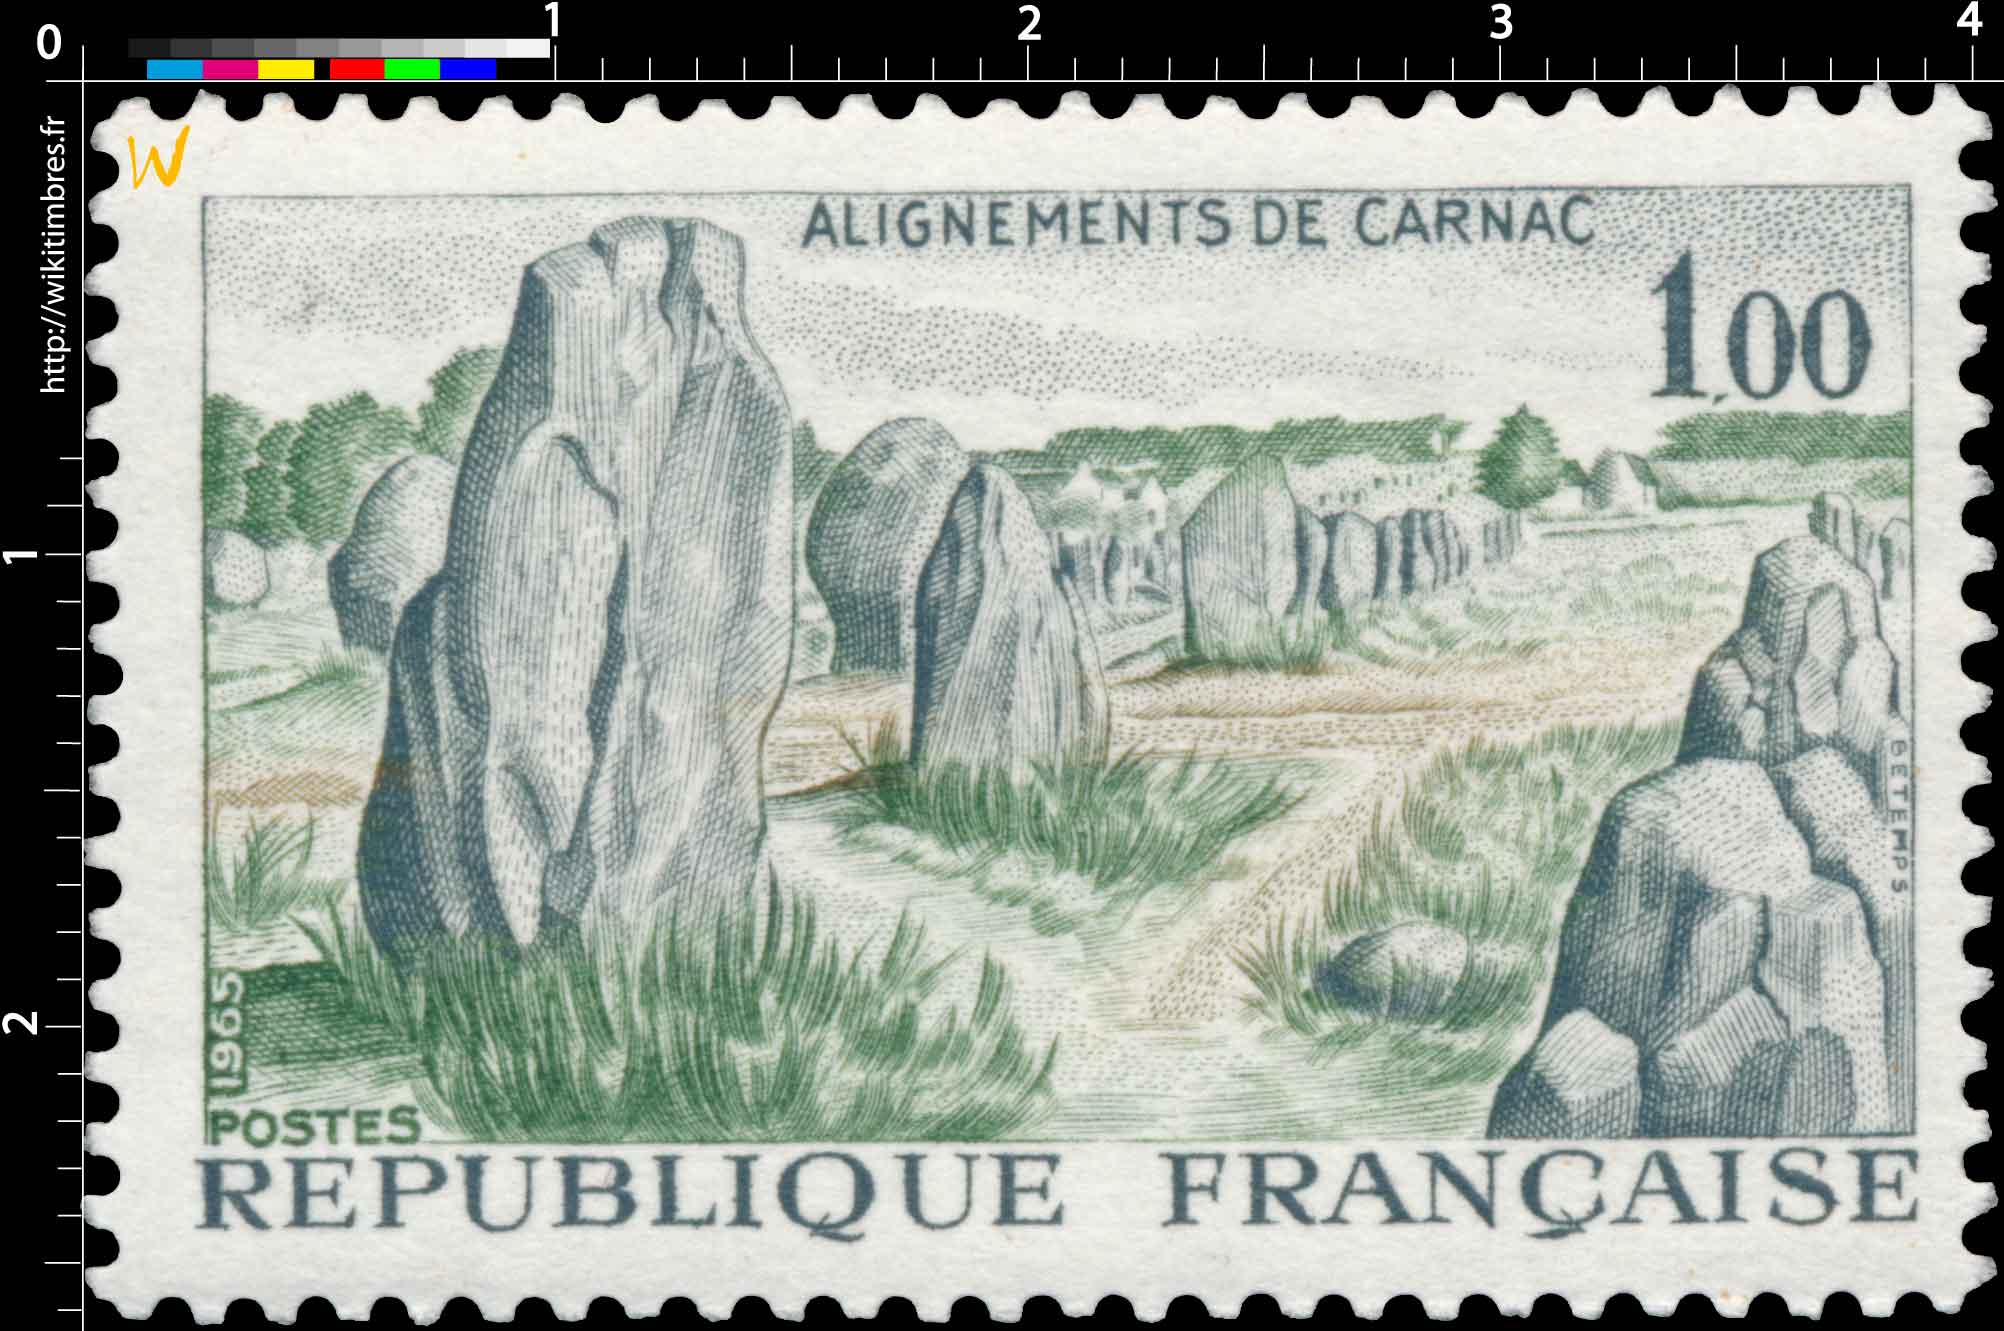 1965 ALIGNEMENTS DE CARNAC